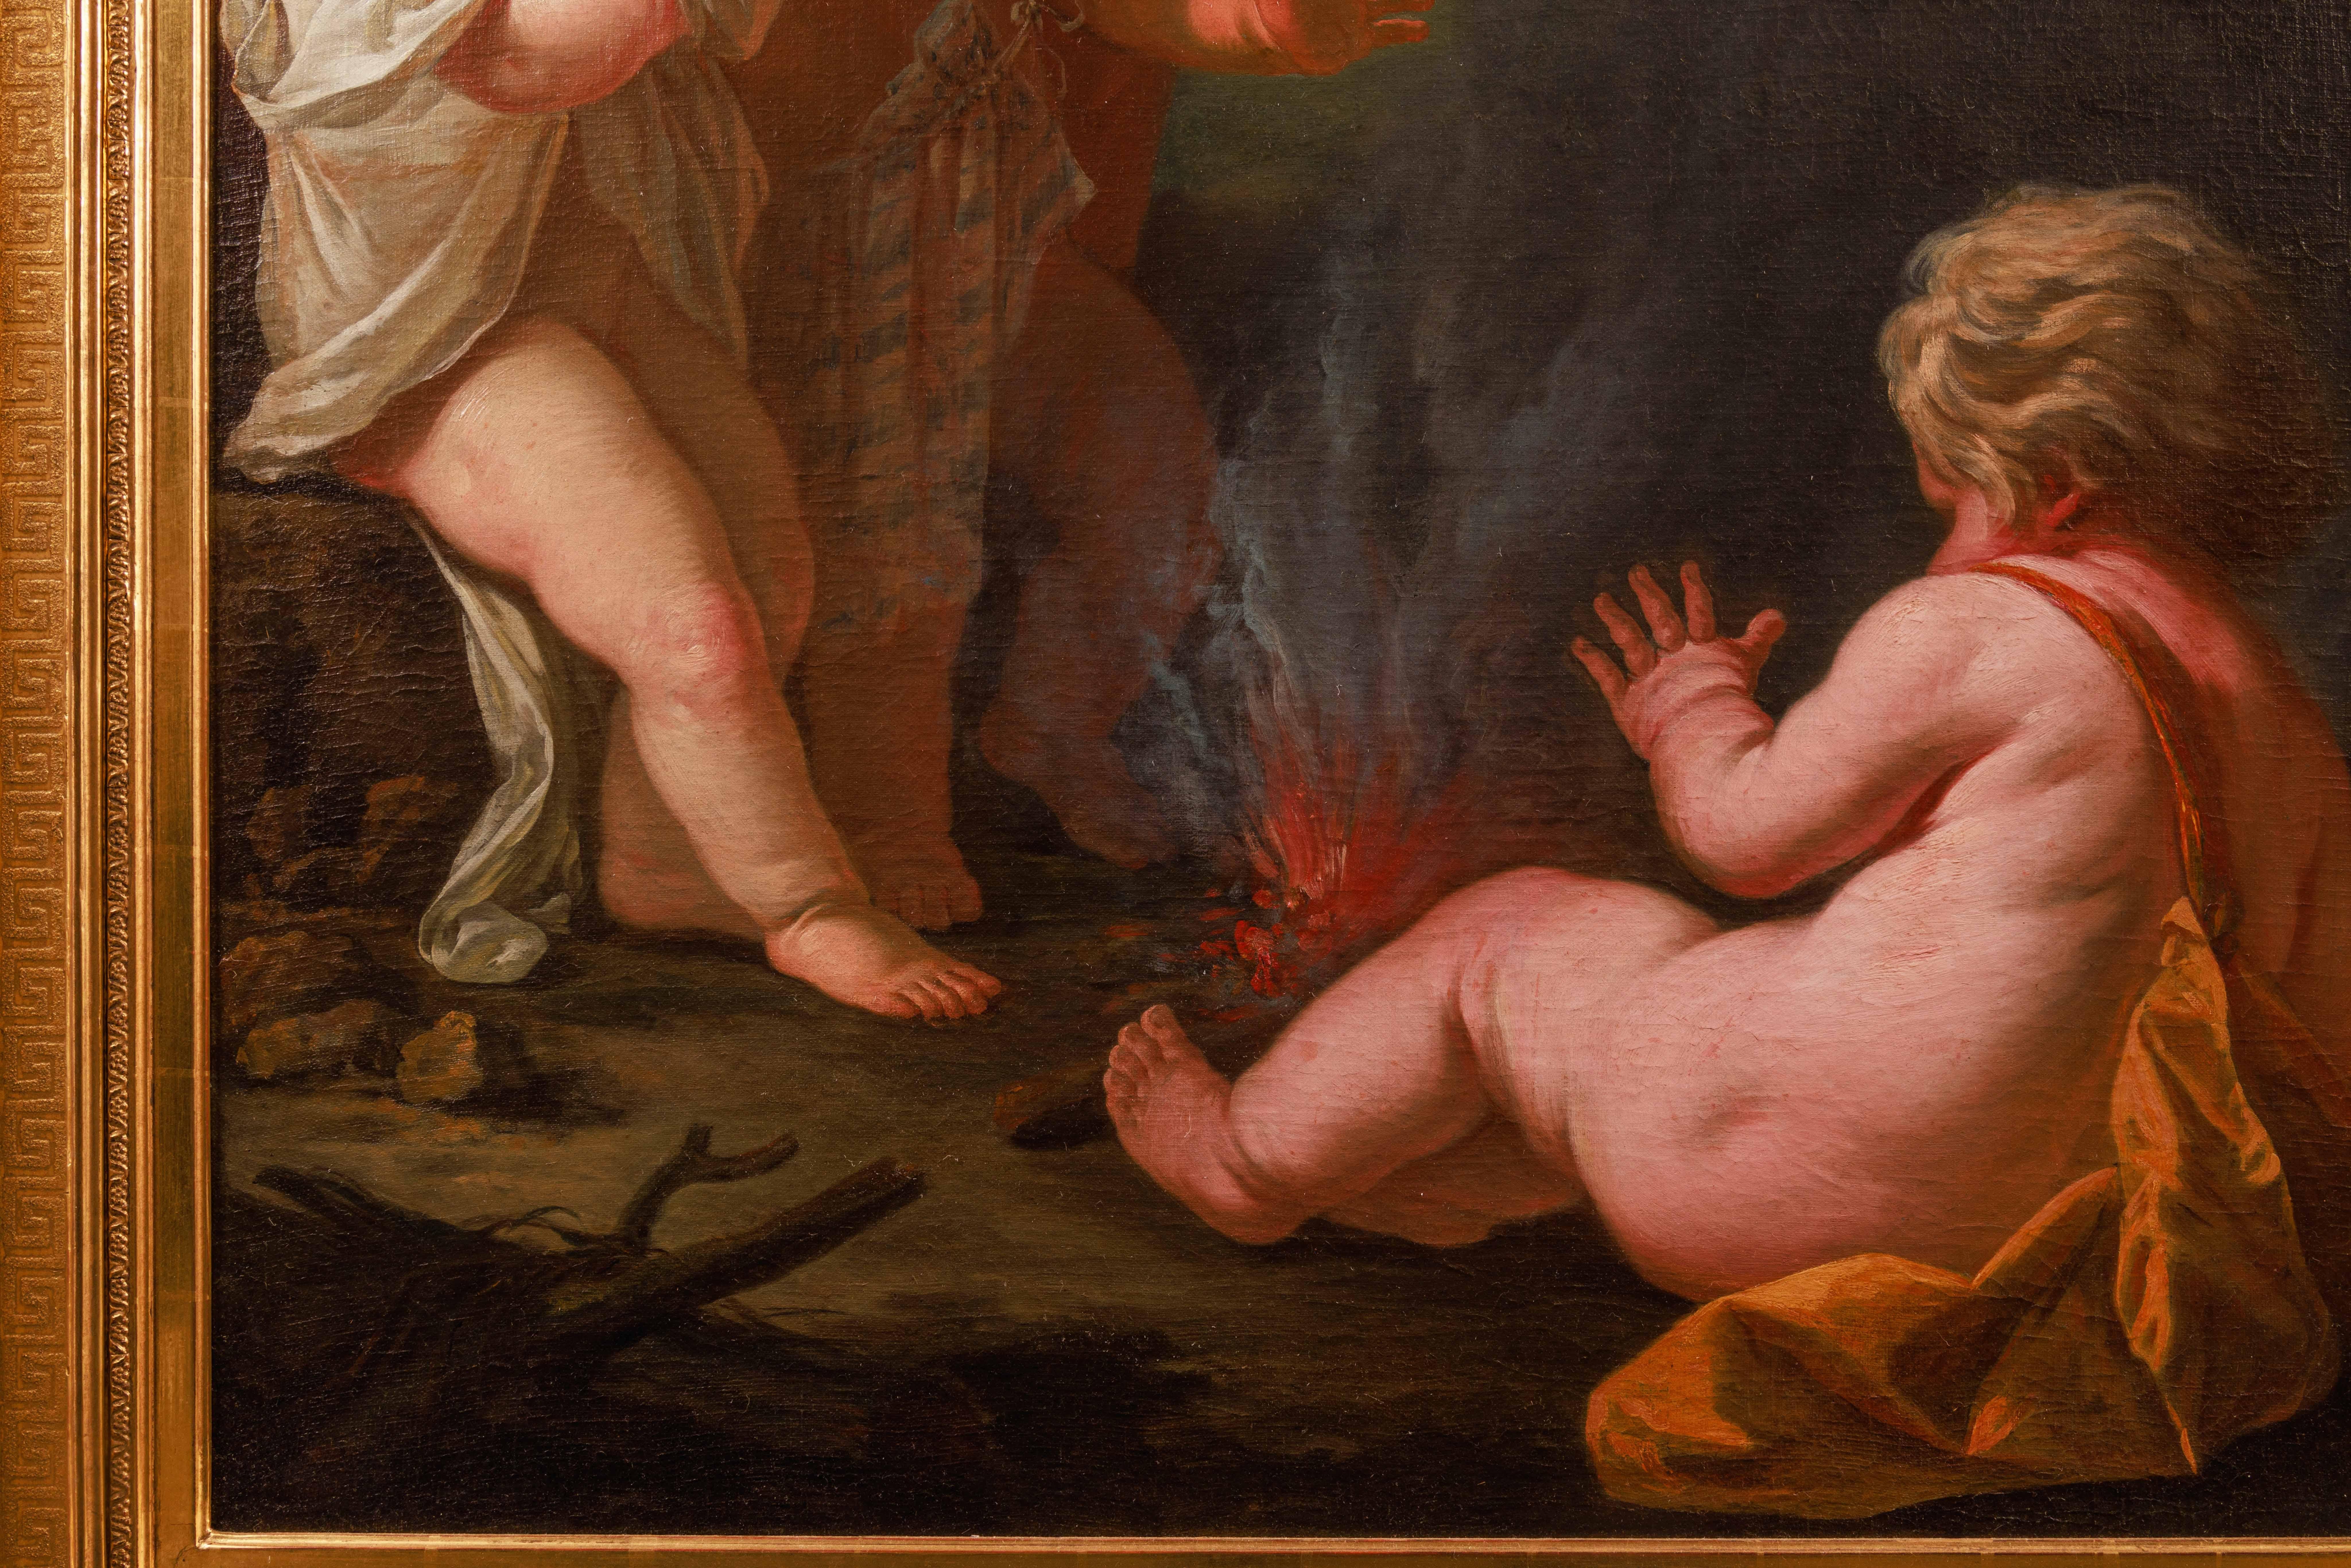 Cercle de Jean Honore Fragonard (français 1732-1806) Peinture exceptionnelle de trois putti et du feu, vers 1795.

Peinture magistrale de la fin du XVIIIe siècle, huile sur toile, représentant deux Putti initiant leur frère au 